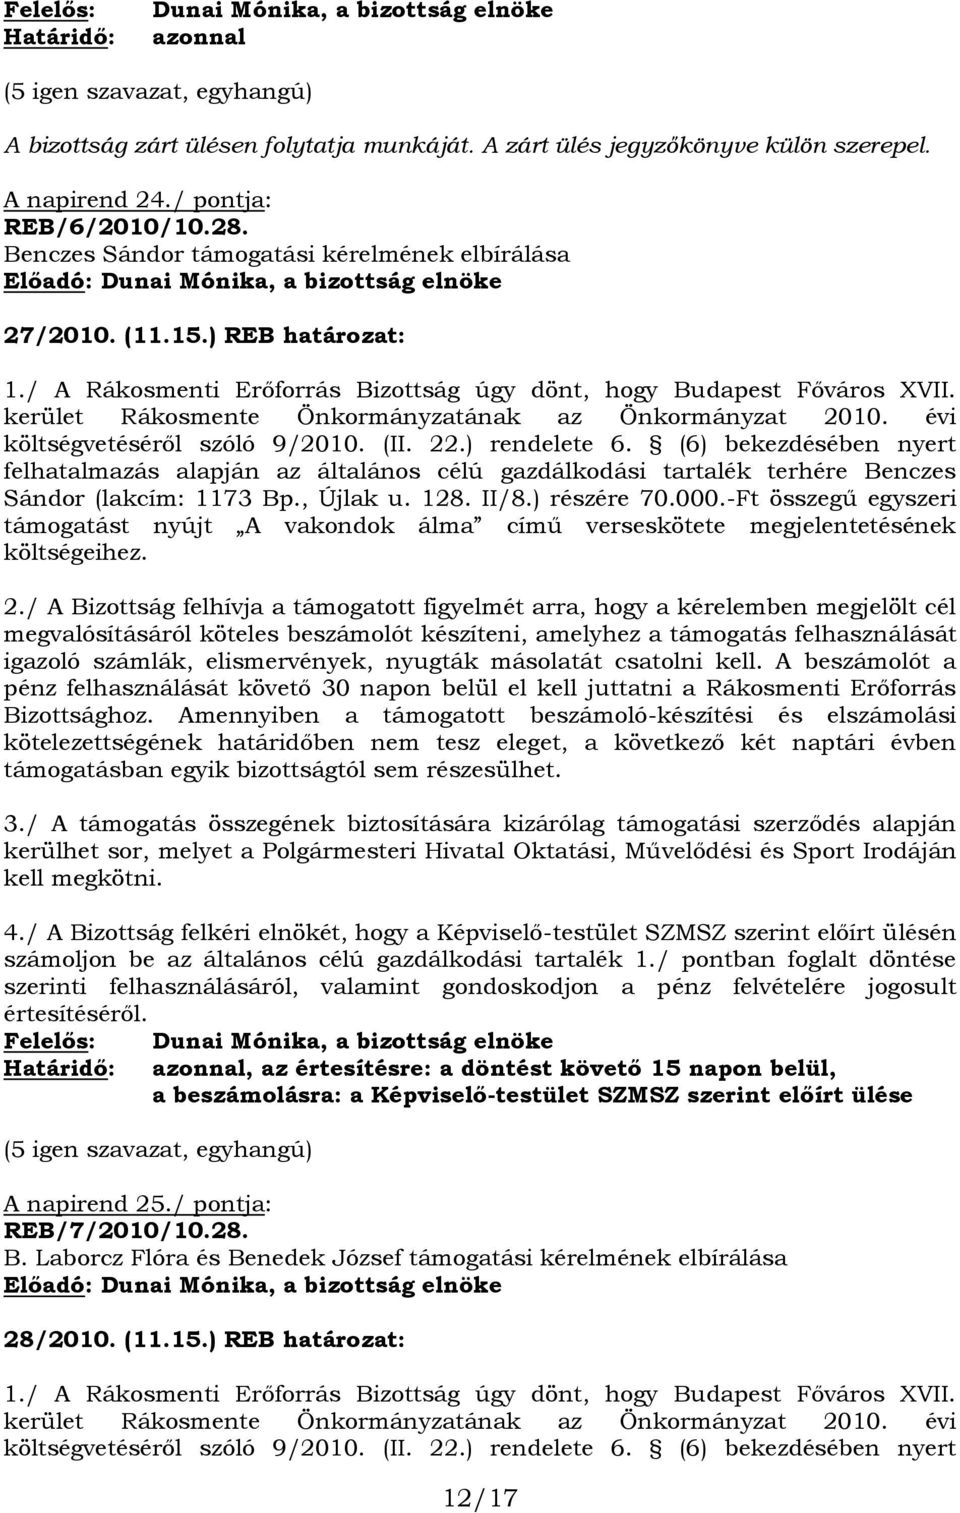 / A Rákosmenti Erőforrás Bizottság úgy dönt, hogy Budapest Főváros XVII. kerület Rákosmente Önkormányzatának az Önkormányzat 2010. évi költségvetéséről szóló 9/2010. (II. 22.) rendelete 6.